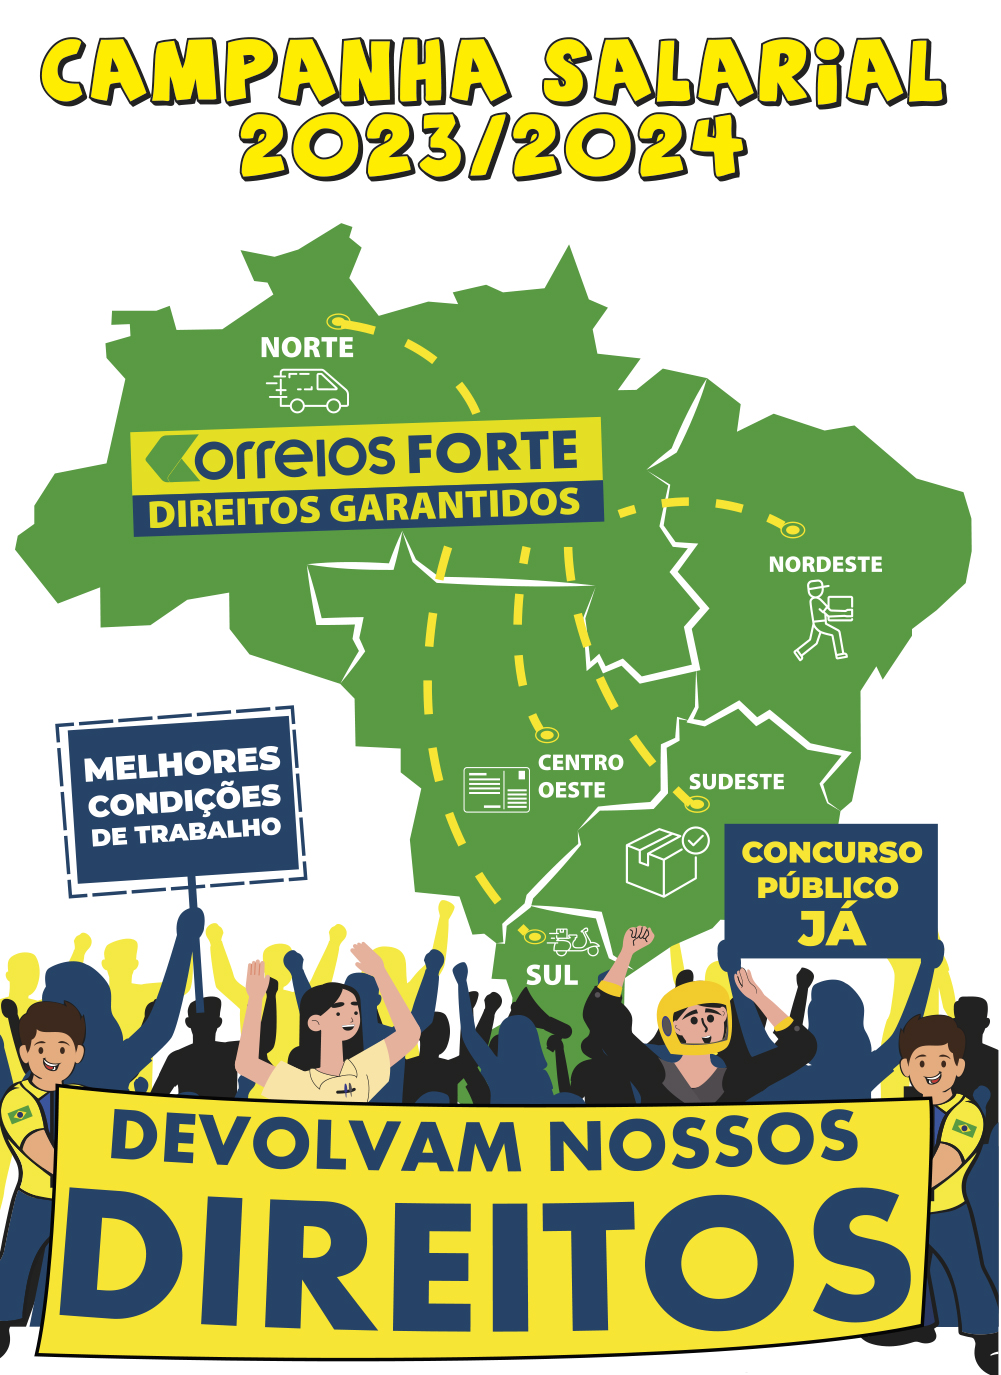 Desafios do Plano de Saúde, Concurso Público e Postalis são destacados pelo presidente dos Correios em balanço de gestão transmitido para todas as regionais do Brasil